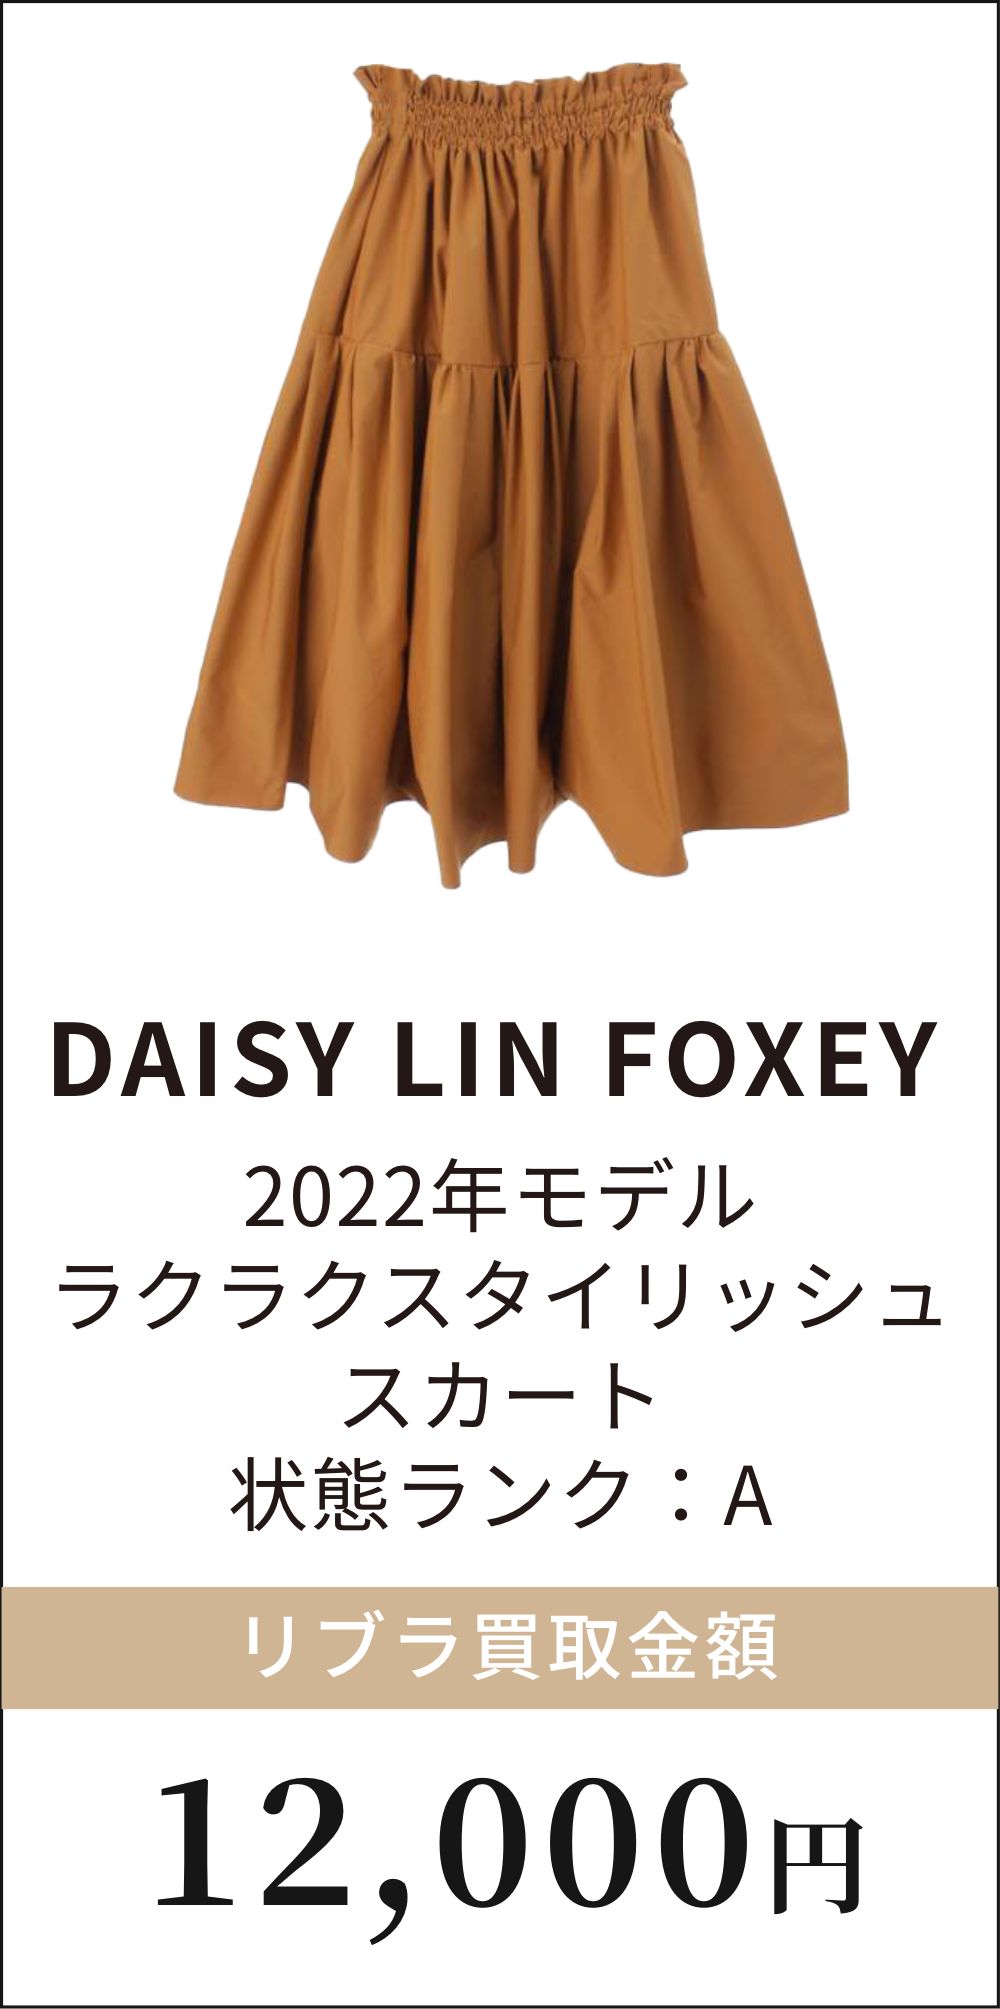 DAISY LIN FOXEY 2022年モデル ラクラクスタイリッシュスカート